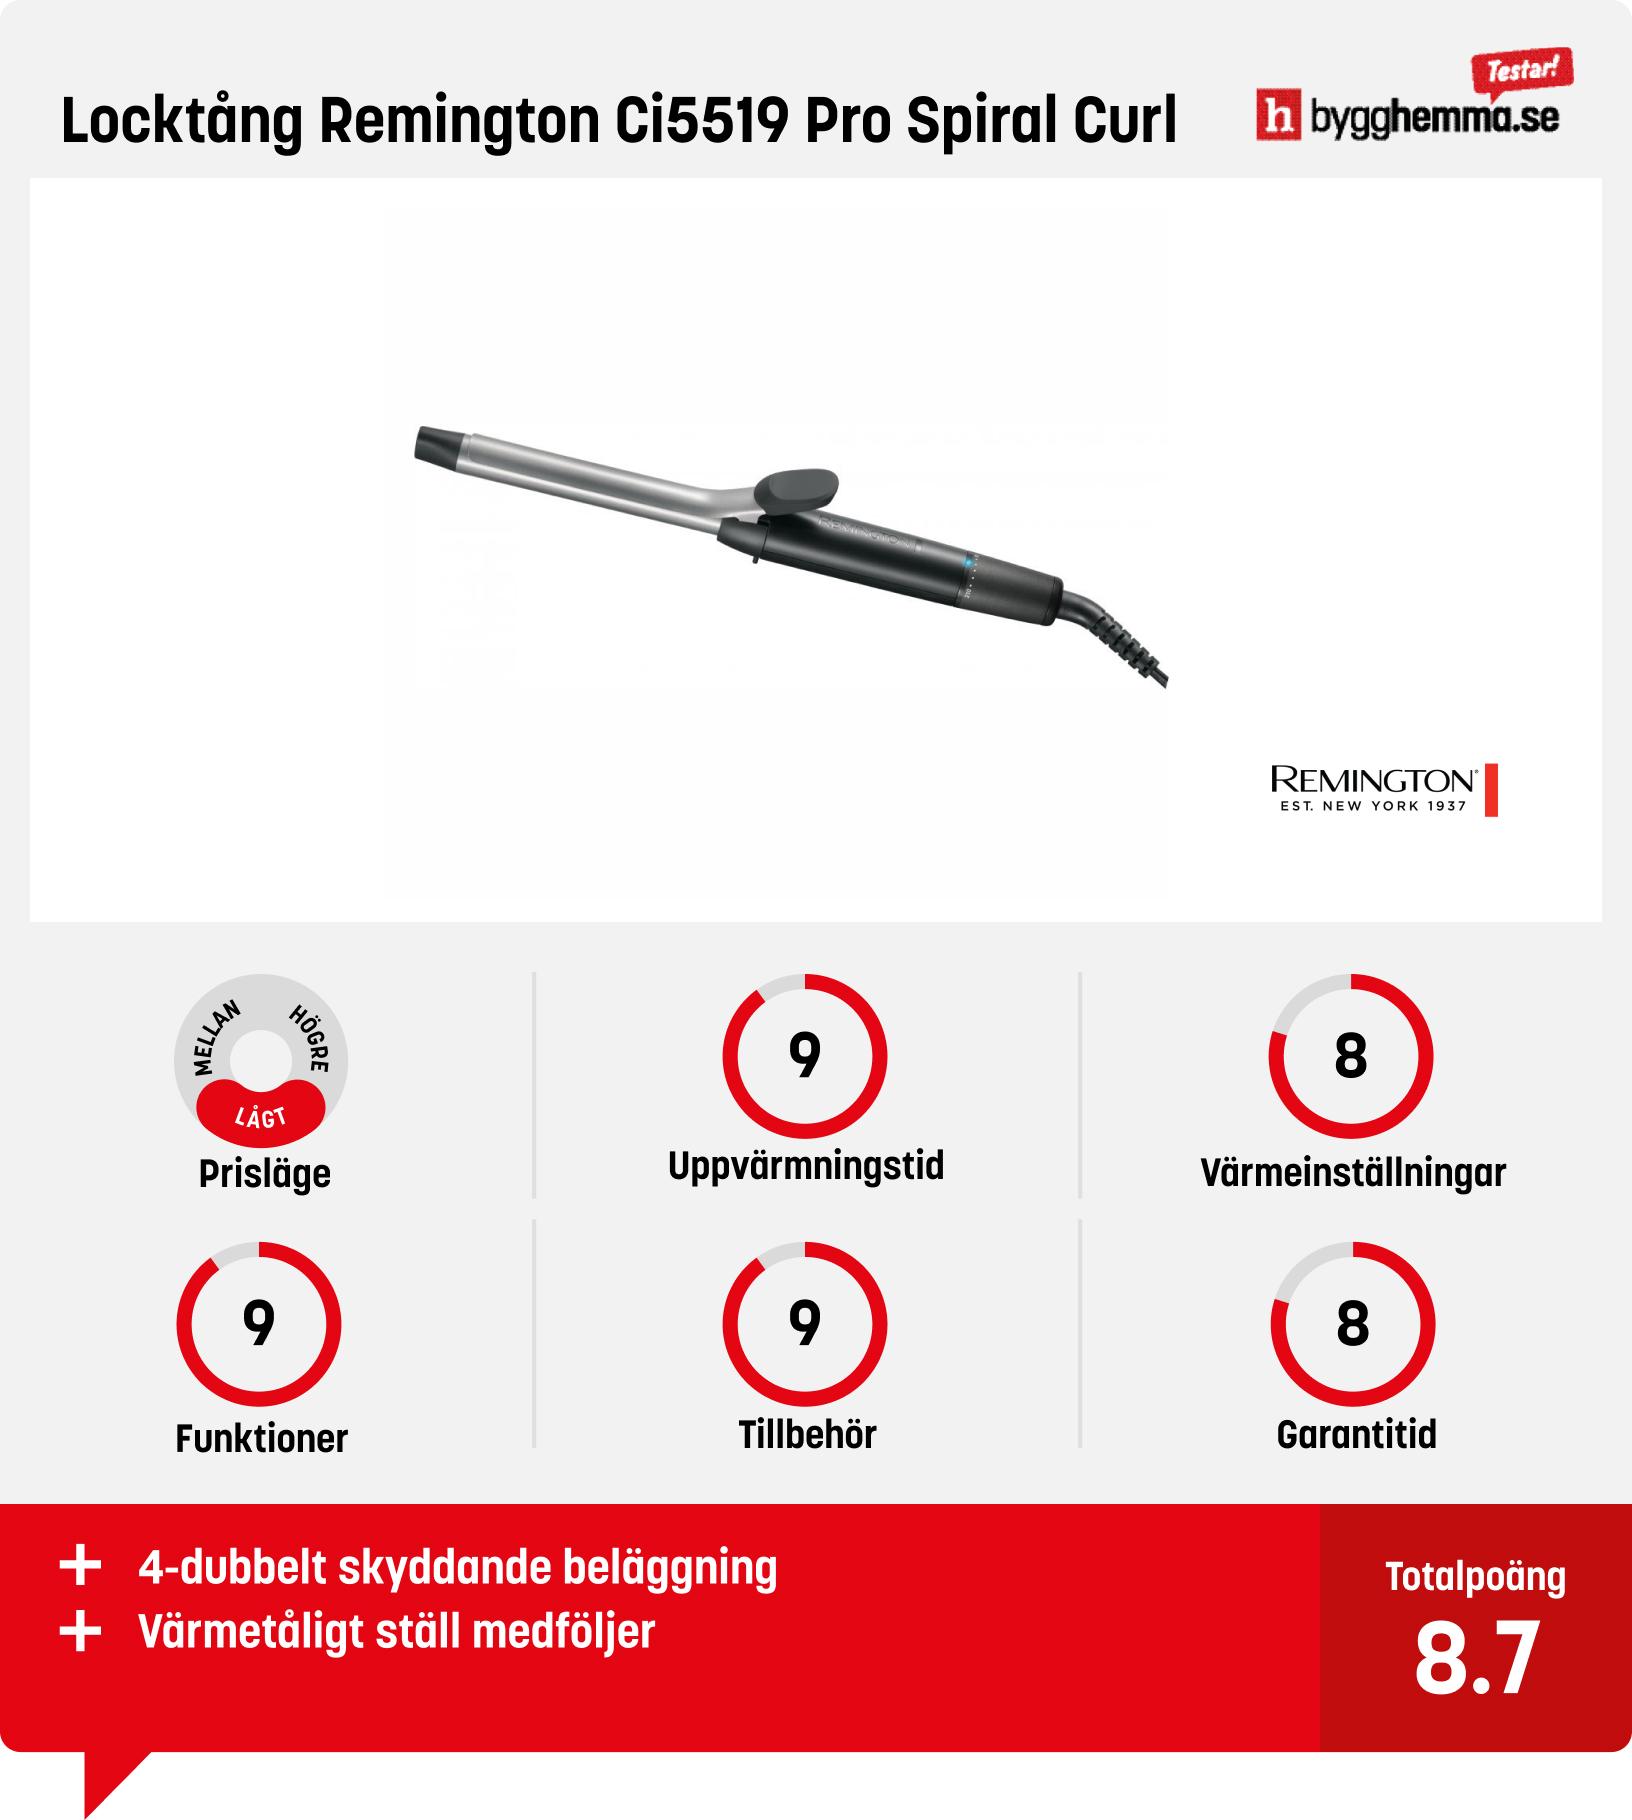 Locktång bäst i test - Locktång Remington Ci5519 Pro Spiral Curl